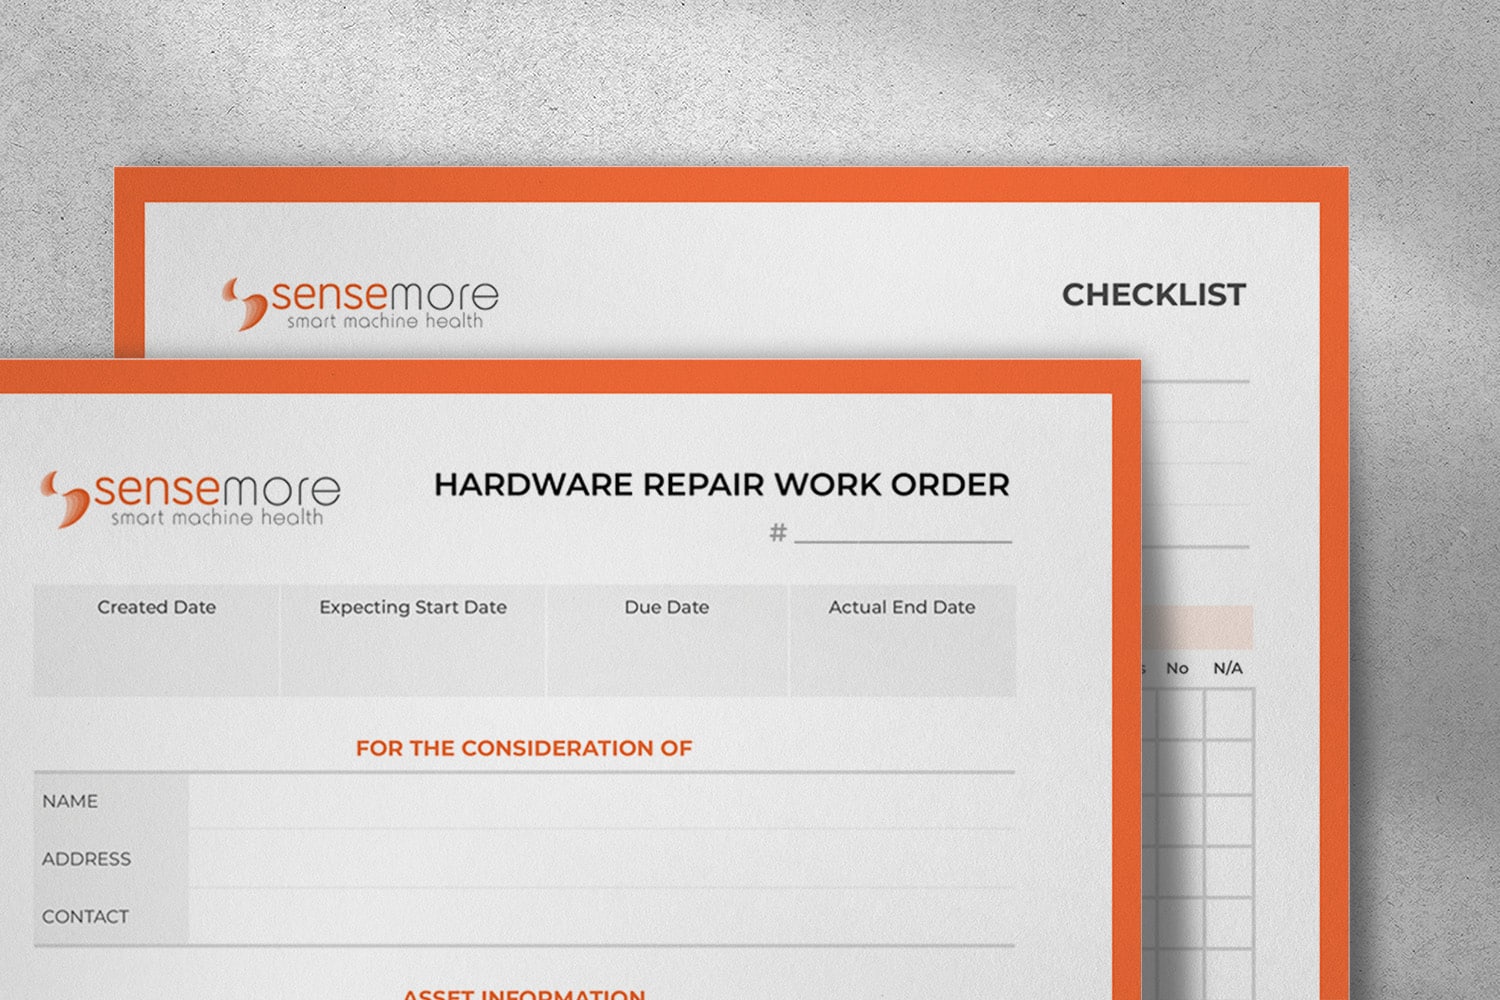 Sensemore Work Order Hardware Repair